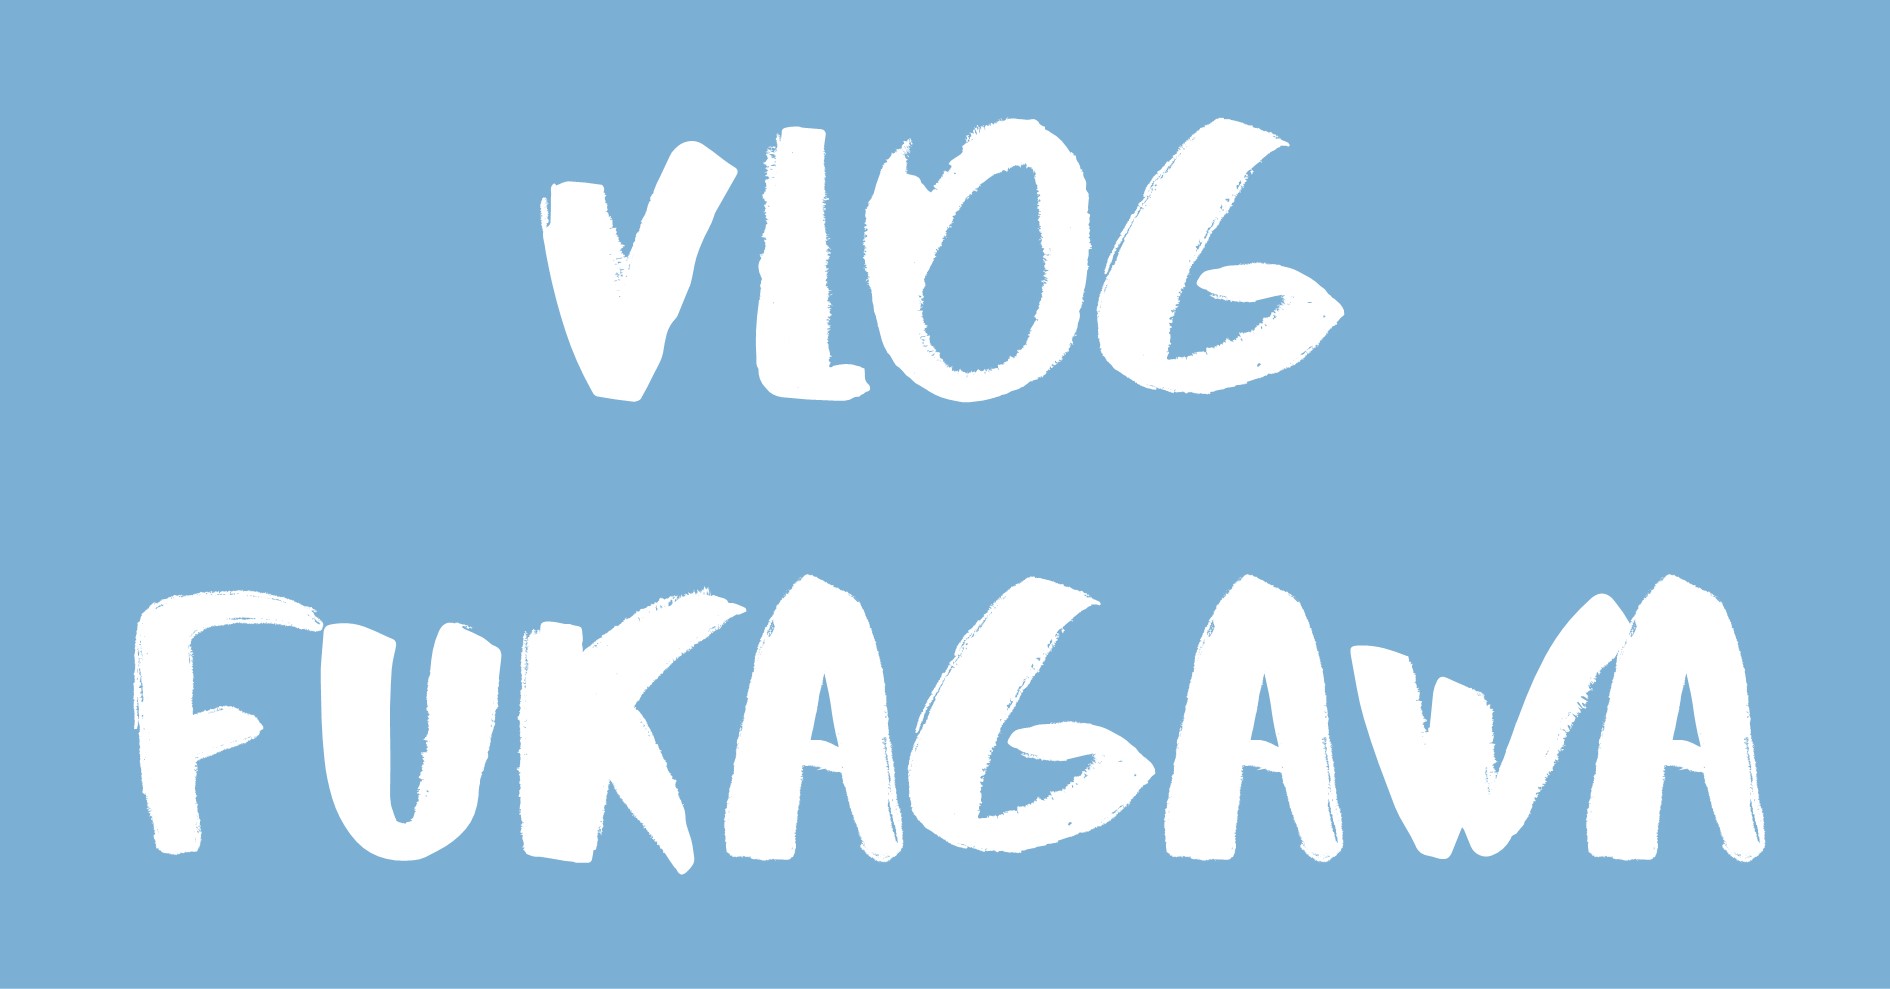 Vlog Fukagawa